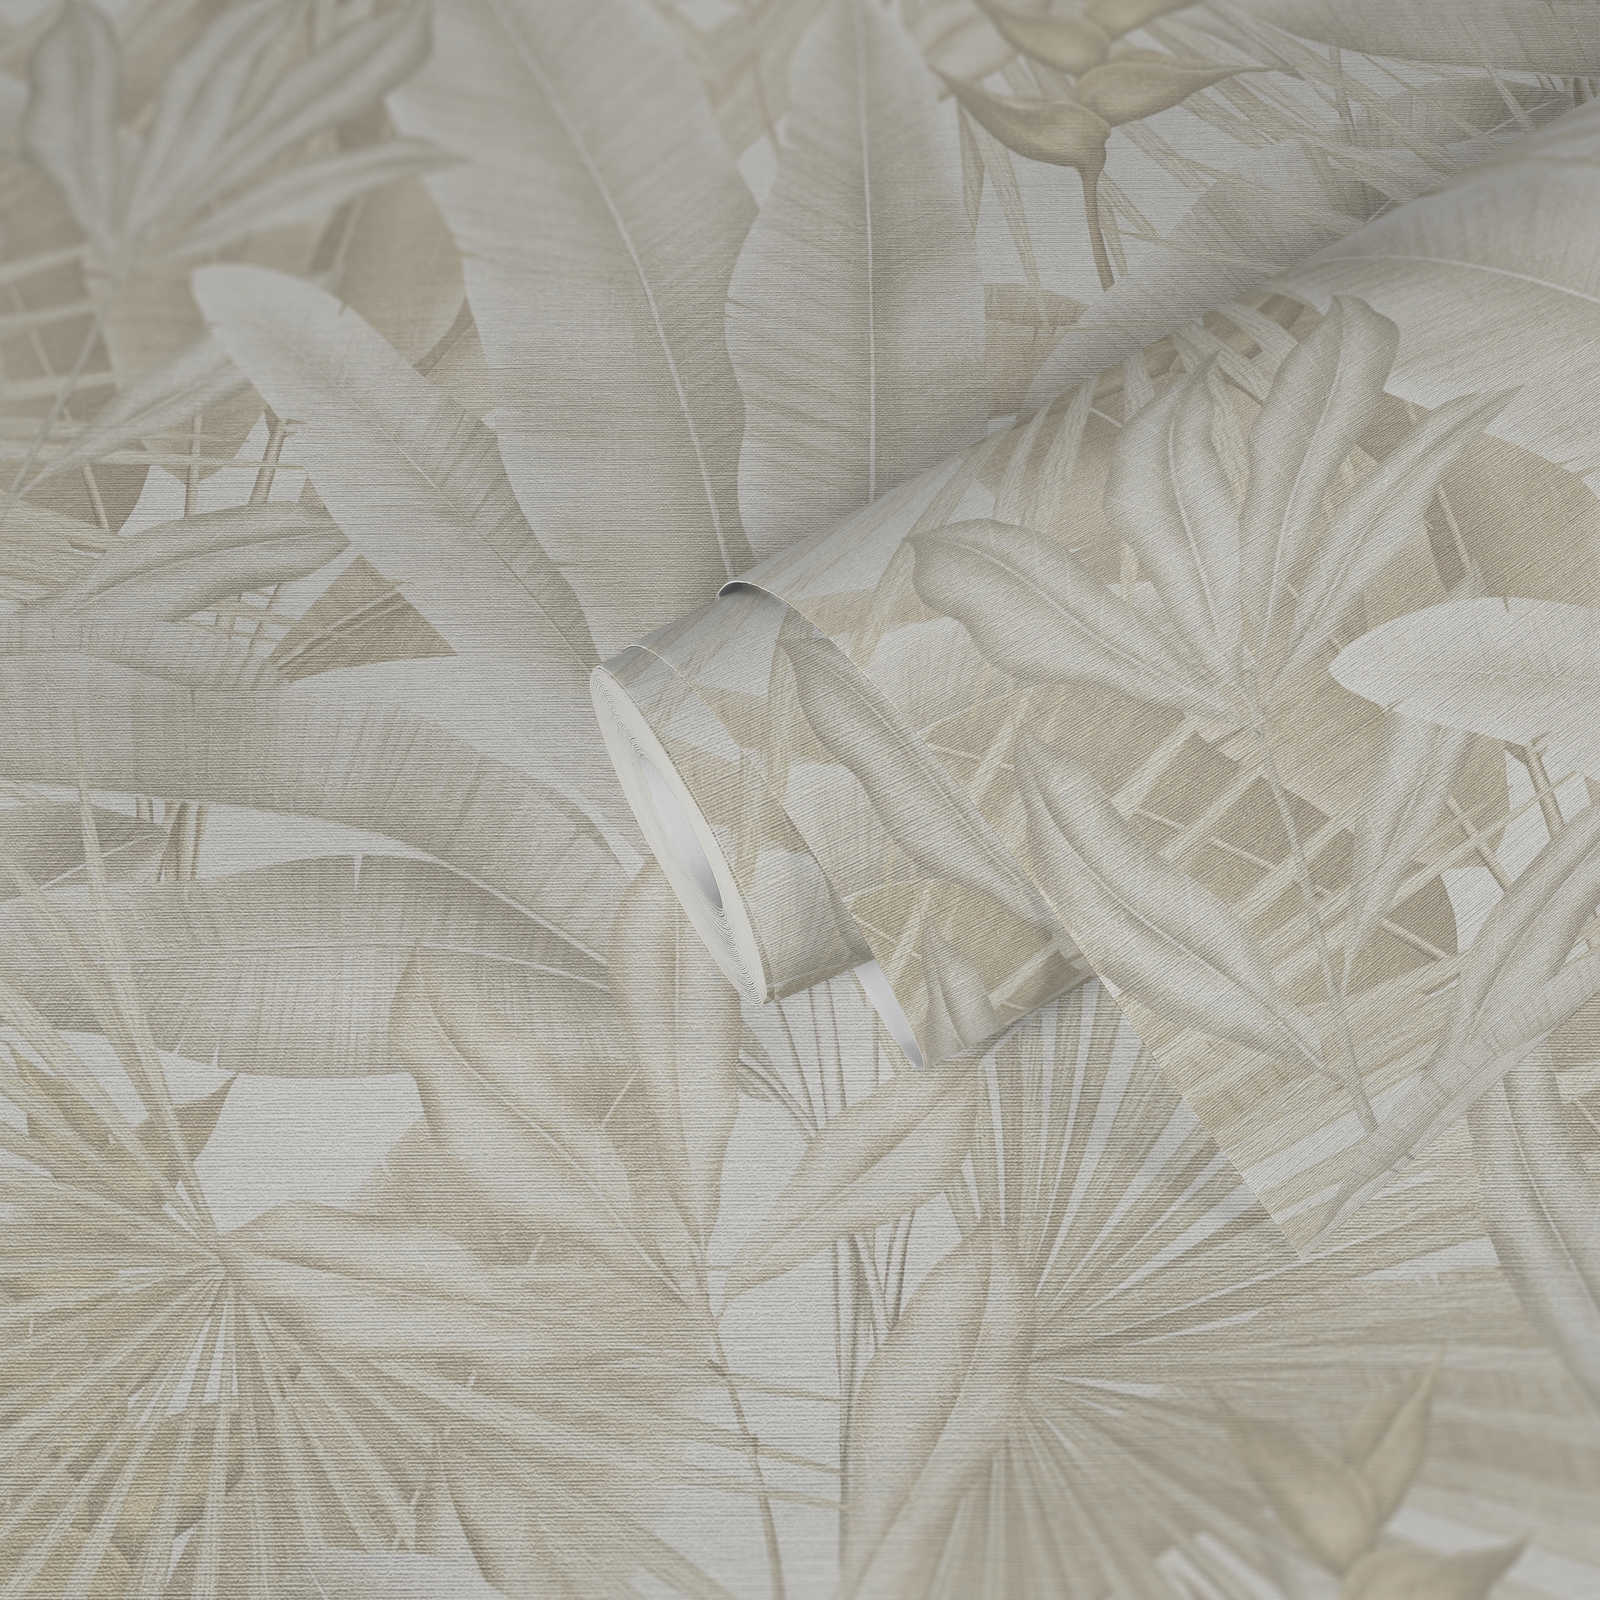             papier peint en papier jungle aux couleurs douces - beige, crème, gris
        